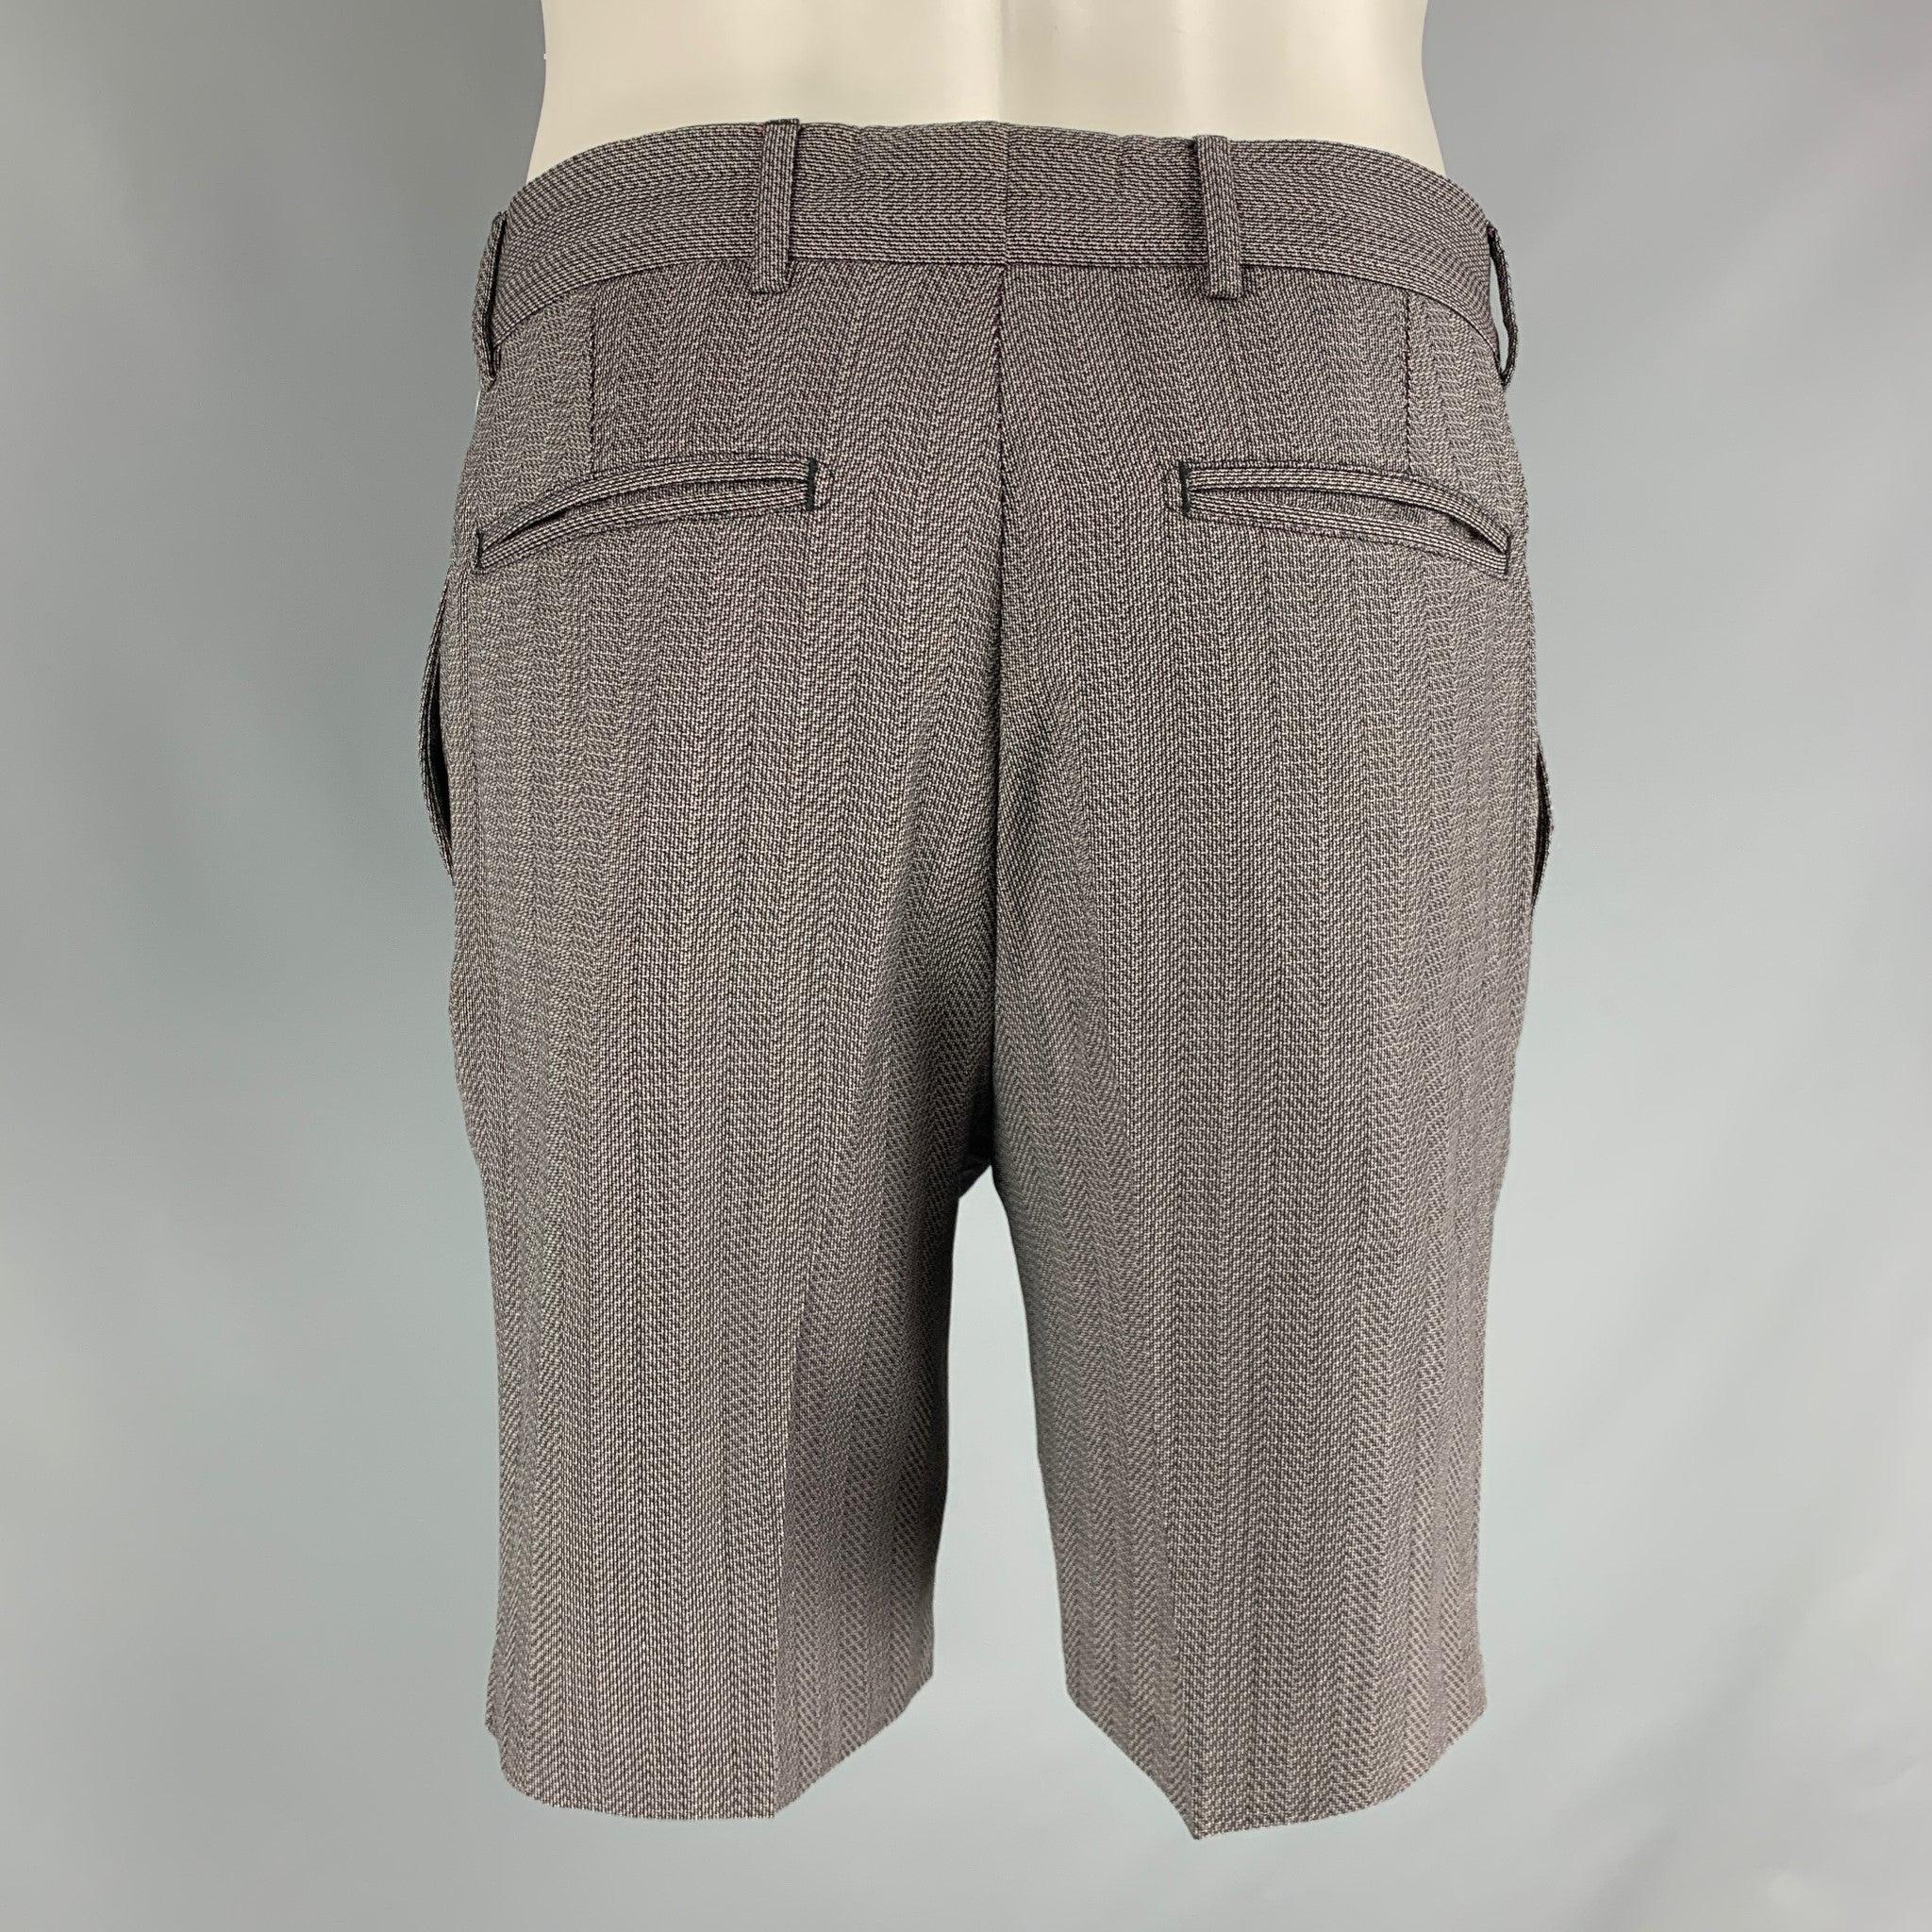 Die lässigen Shorts von LOUIS VUITTON sind aus grauer Baumwolle, haben einen Nagelkopf-Print, einen Reißverschluss und eine gefaltete Passform. Hergestellt in Italien, sehr guter gebrauchter Zustand 

Markiert:   40 

Abmessungen: 
  Taille: 32 Zoll